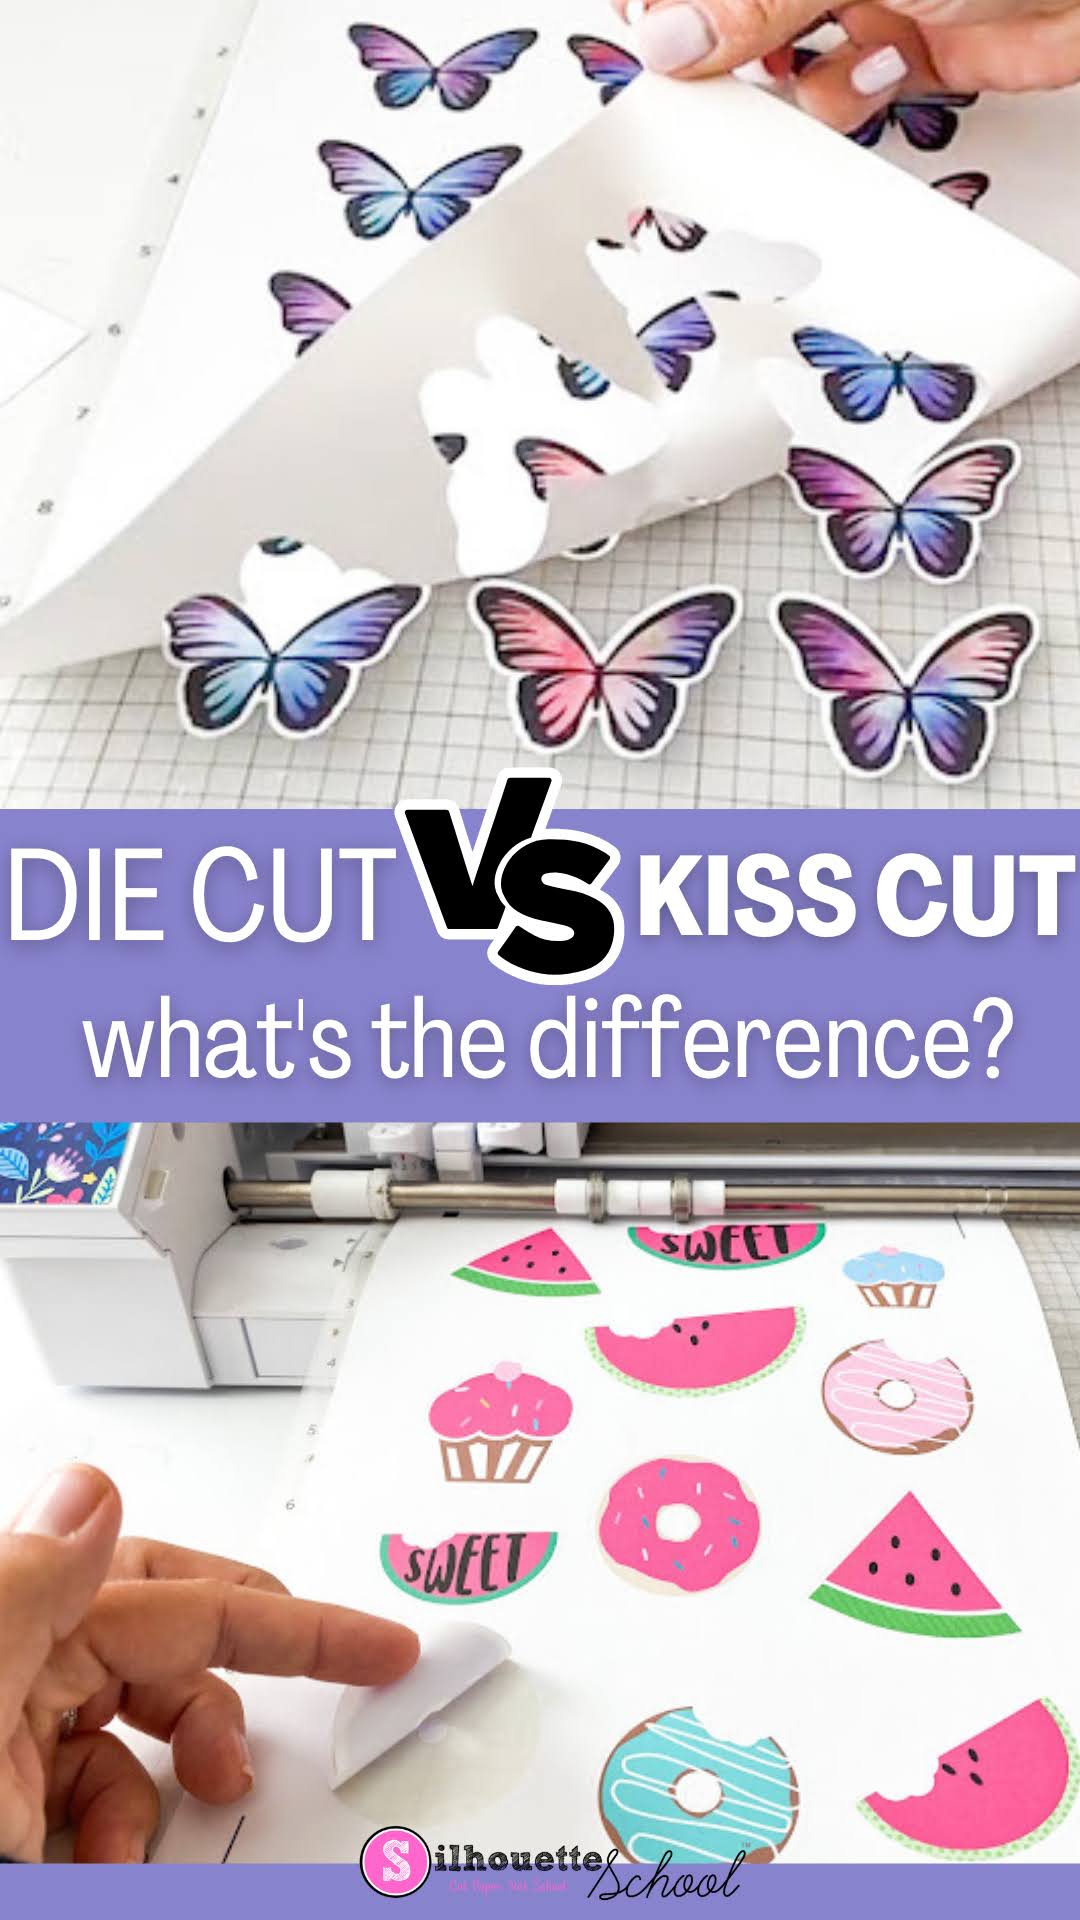 Die cut stickers vs. kiss cut stickers, Blog